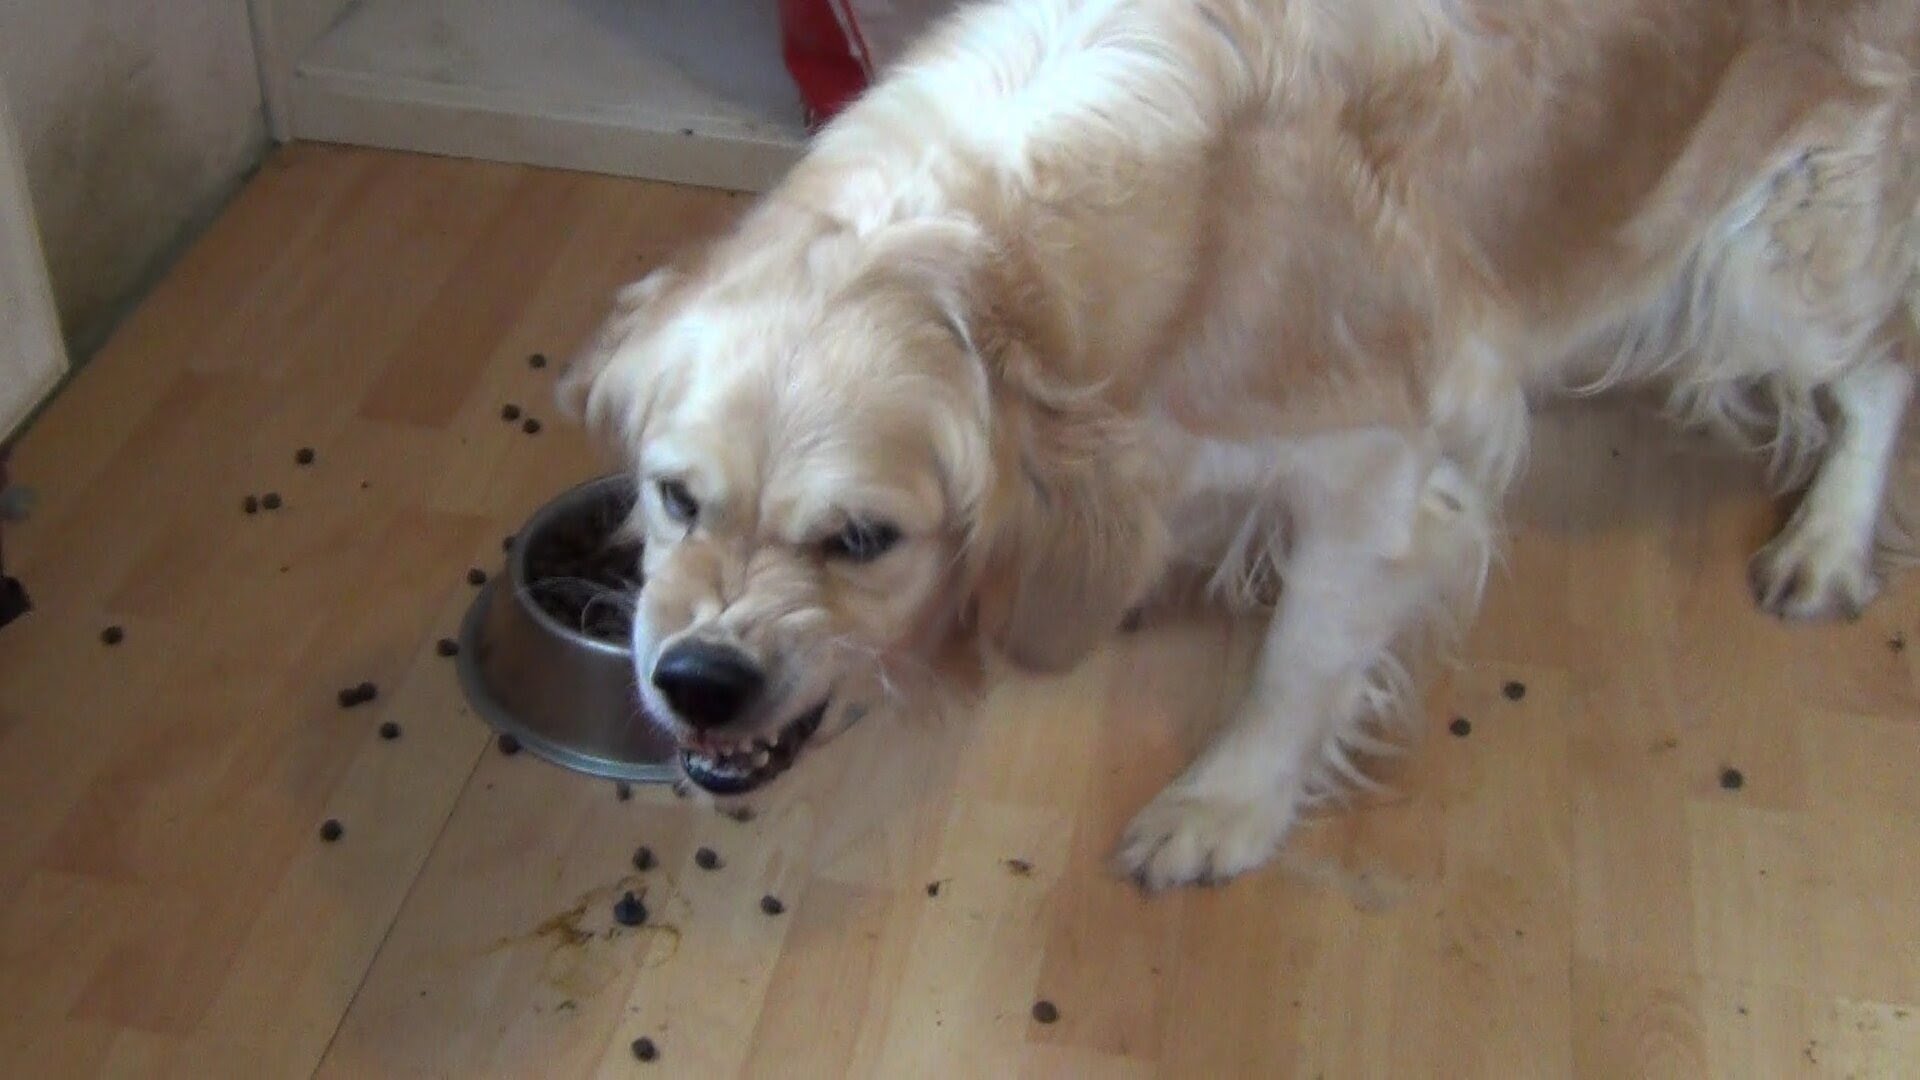 Angry eating dog - YouTube